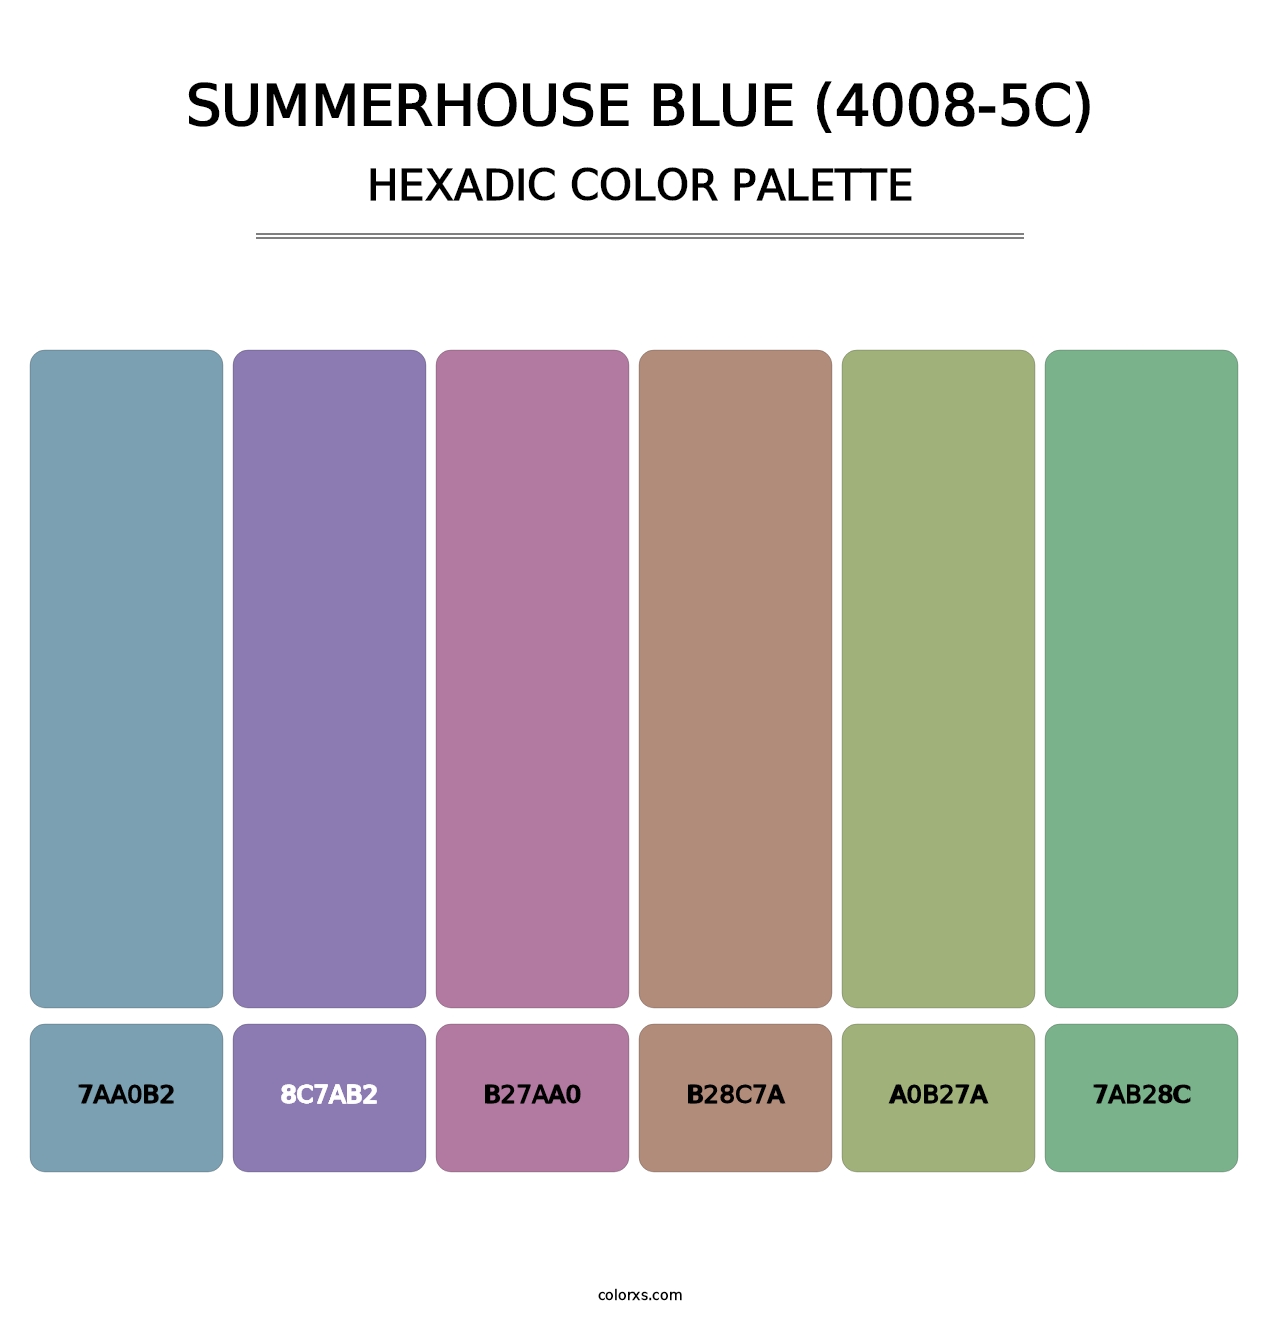 Summerhouse Blue (4008-5C) - Hexadic Color Palette